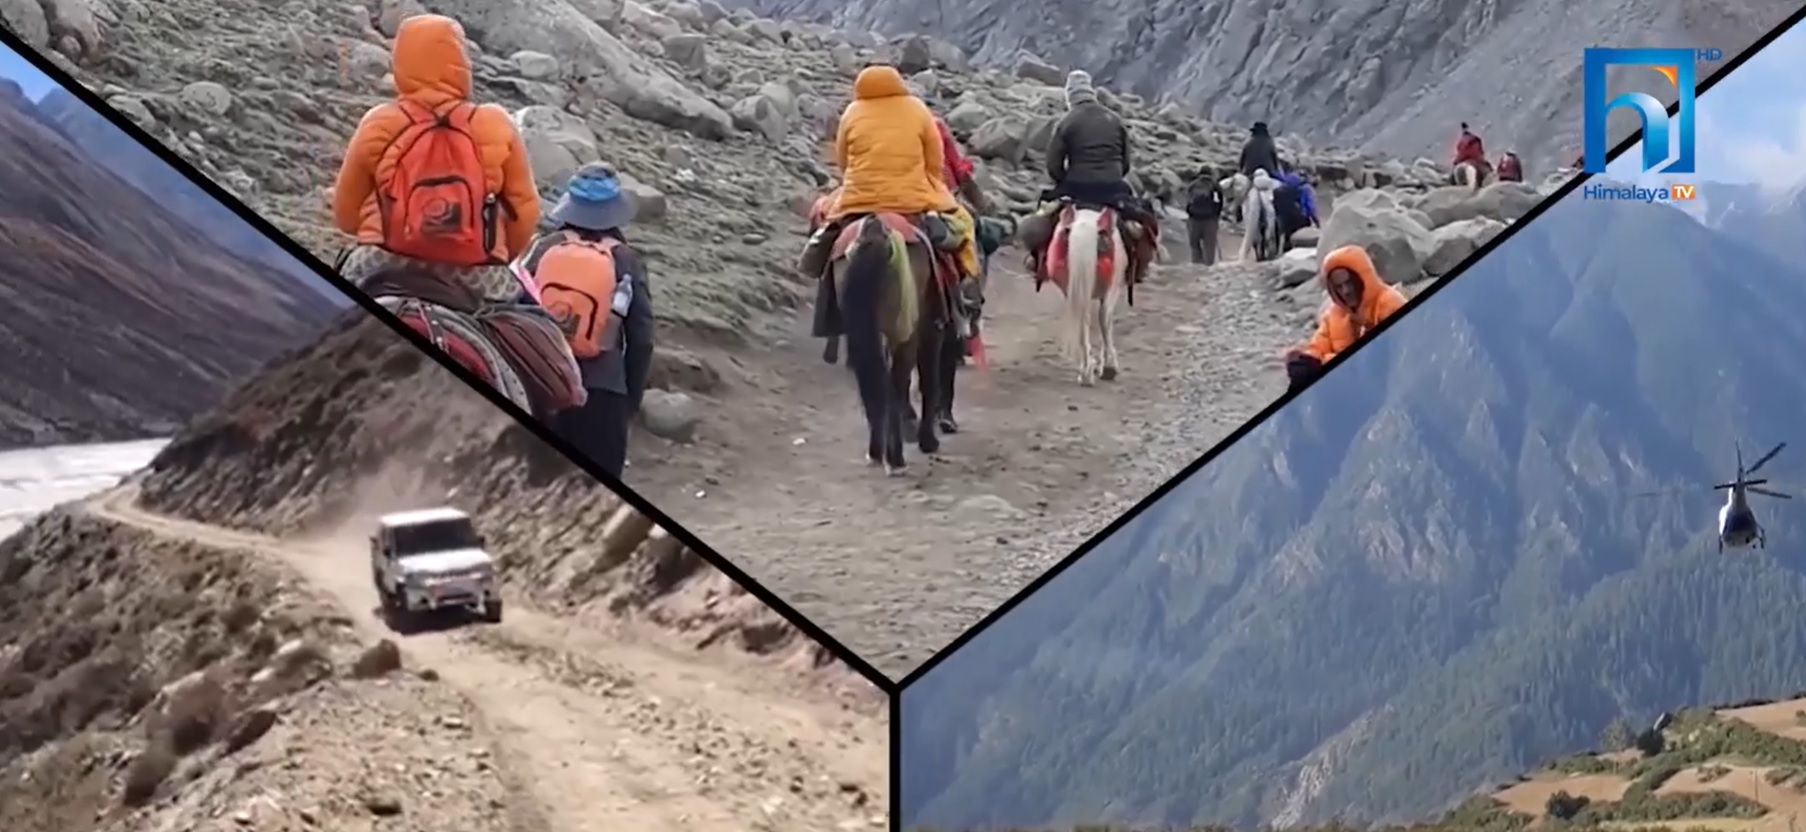 चीनले सीमा बन्द गरेका कारण नेपाली सीमाबाटै मानसरोबर दर्शन गर्न बाध्य (भिडियोसहित)